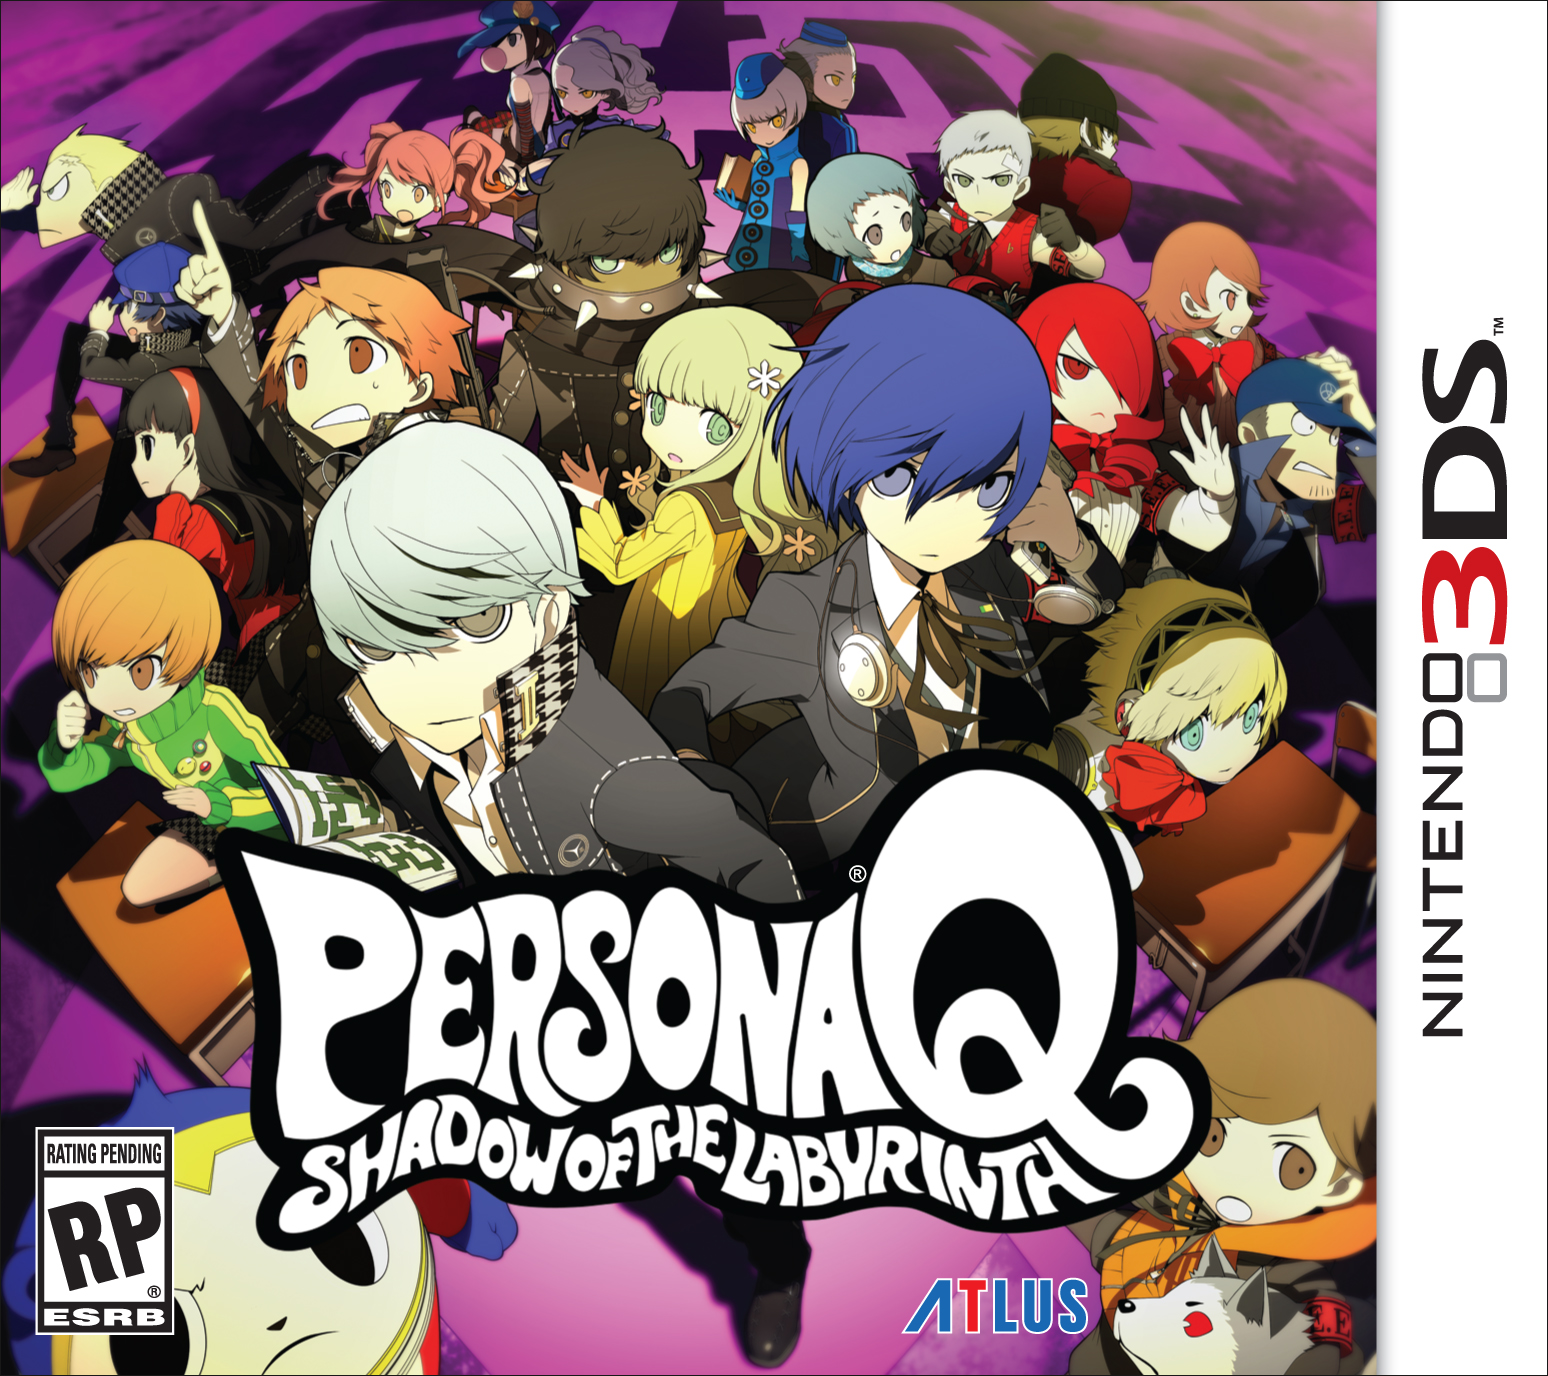 Atlus announces Persona Q Premium edition for 3DS